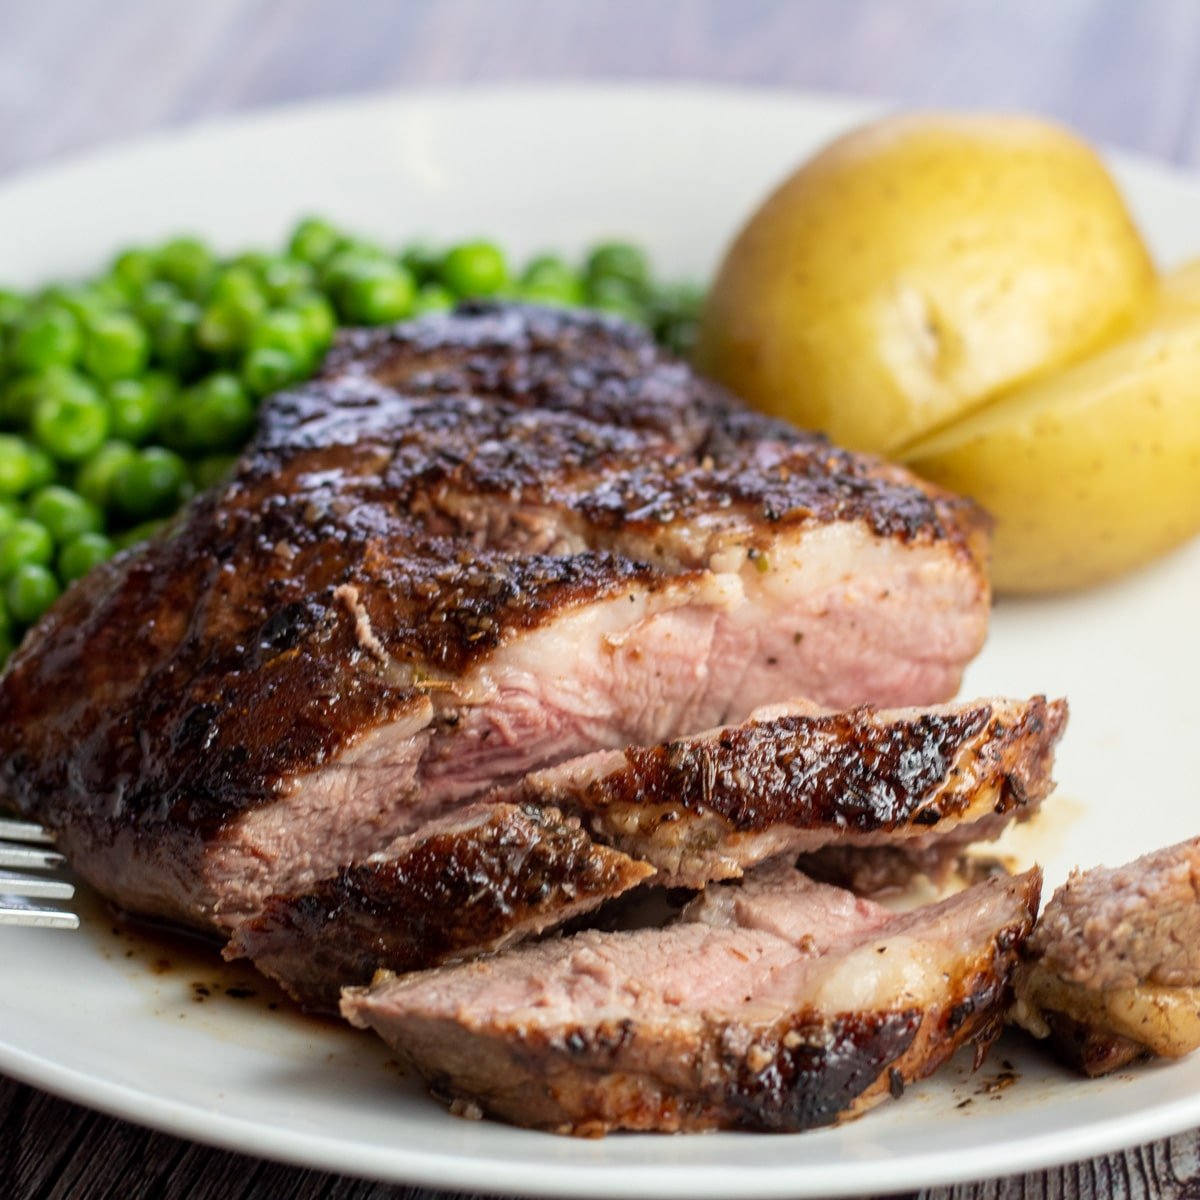 Ce délicieux steak de gigot d'agneau poêlé est coupé en tranches pour être servi avec des pois et des pommes de terre bouillies.